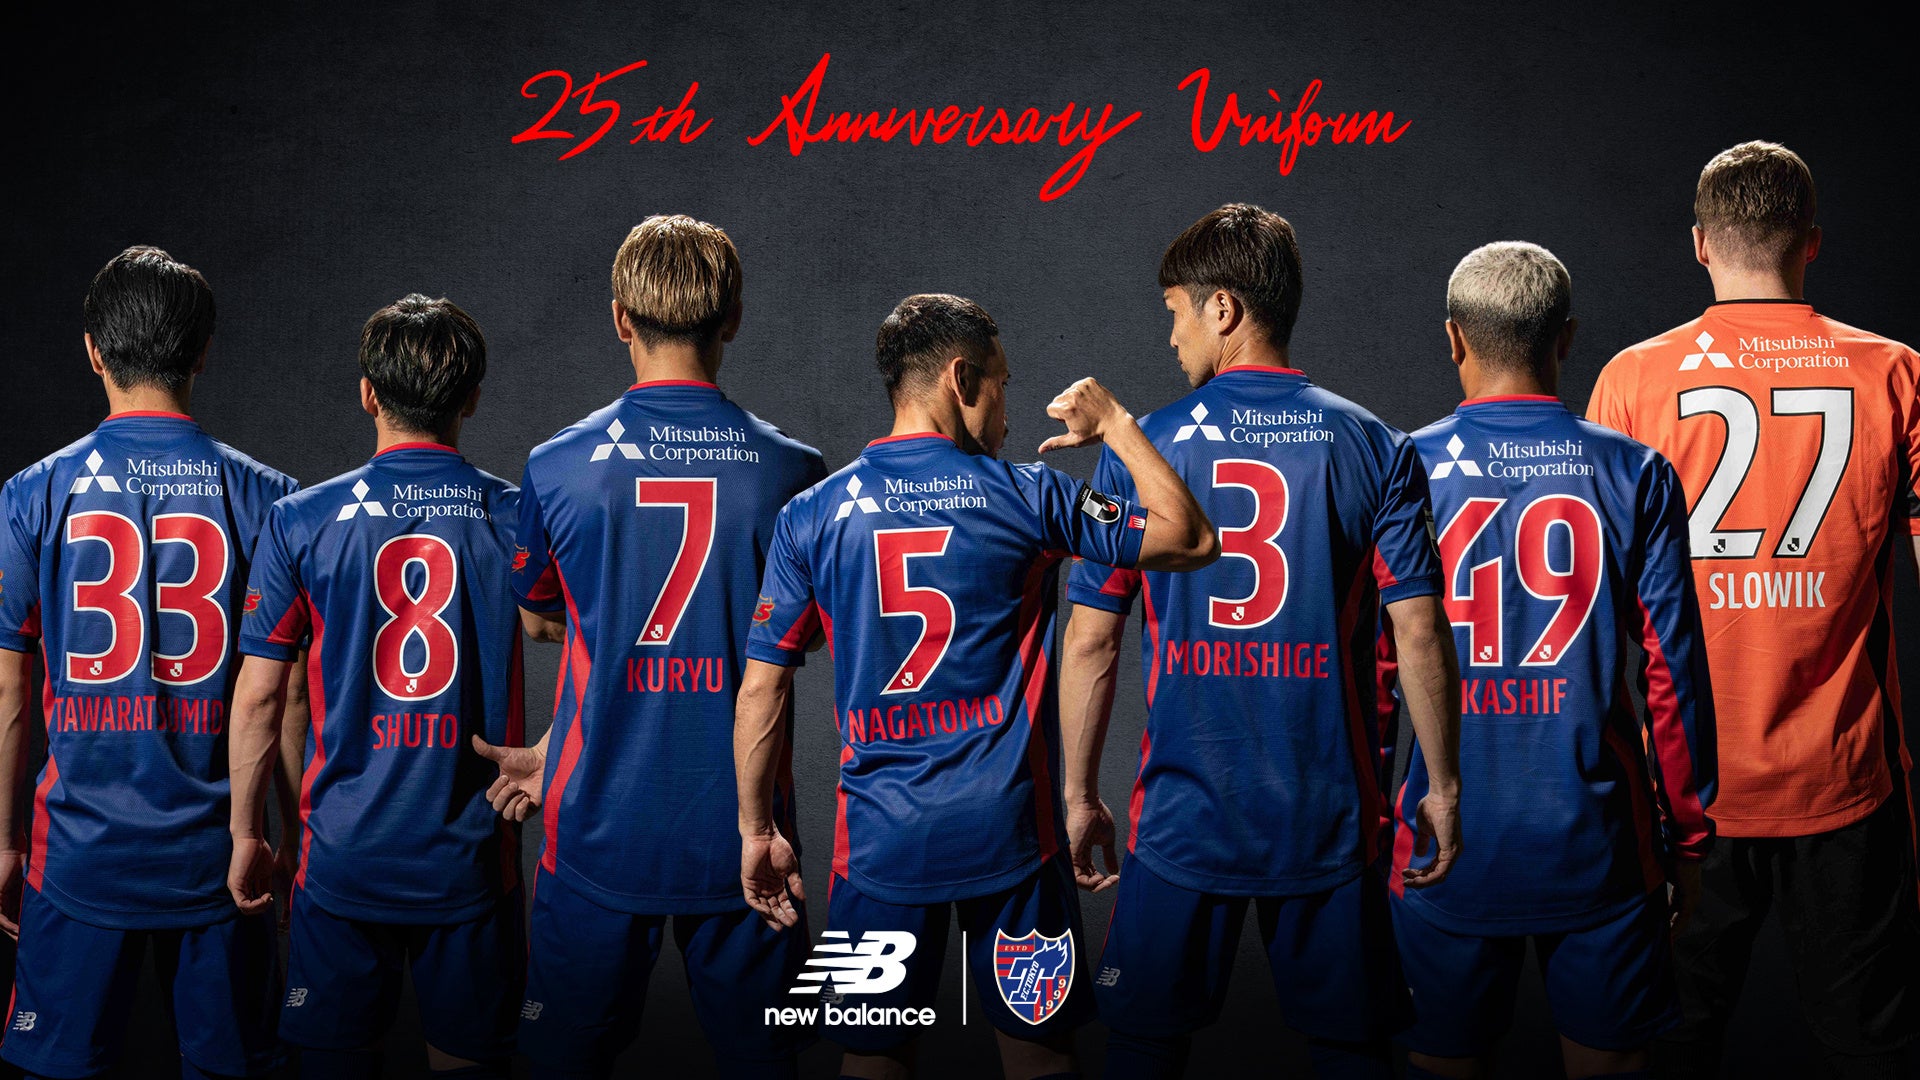 ニューバランスとFC東京がクラブ設立 25周年記念ユニフォームを発表4月 